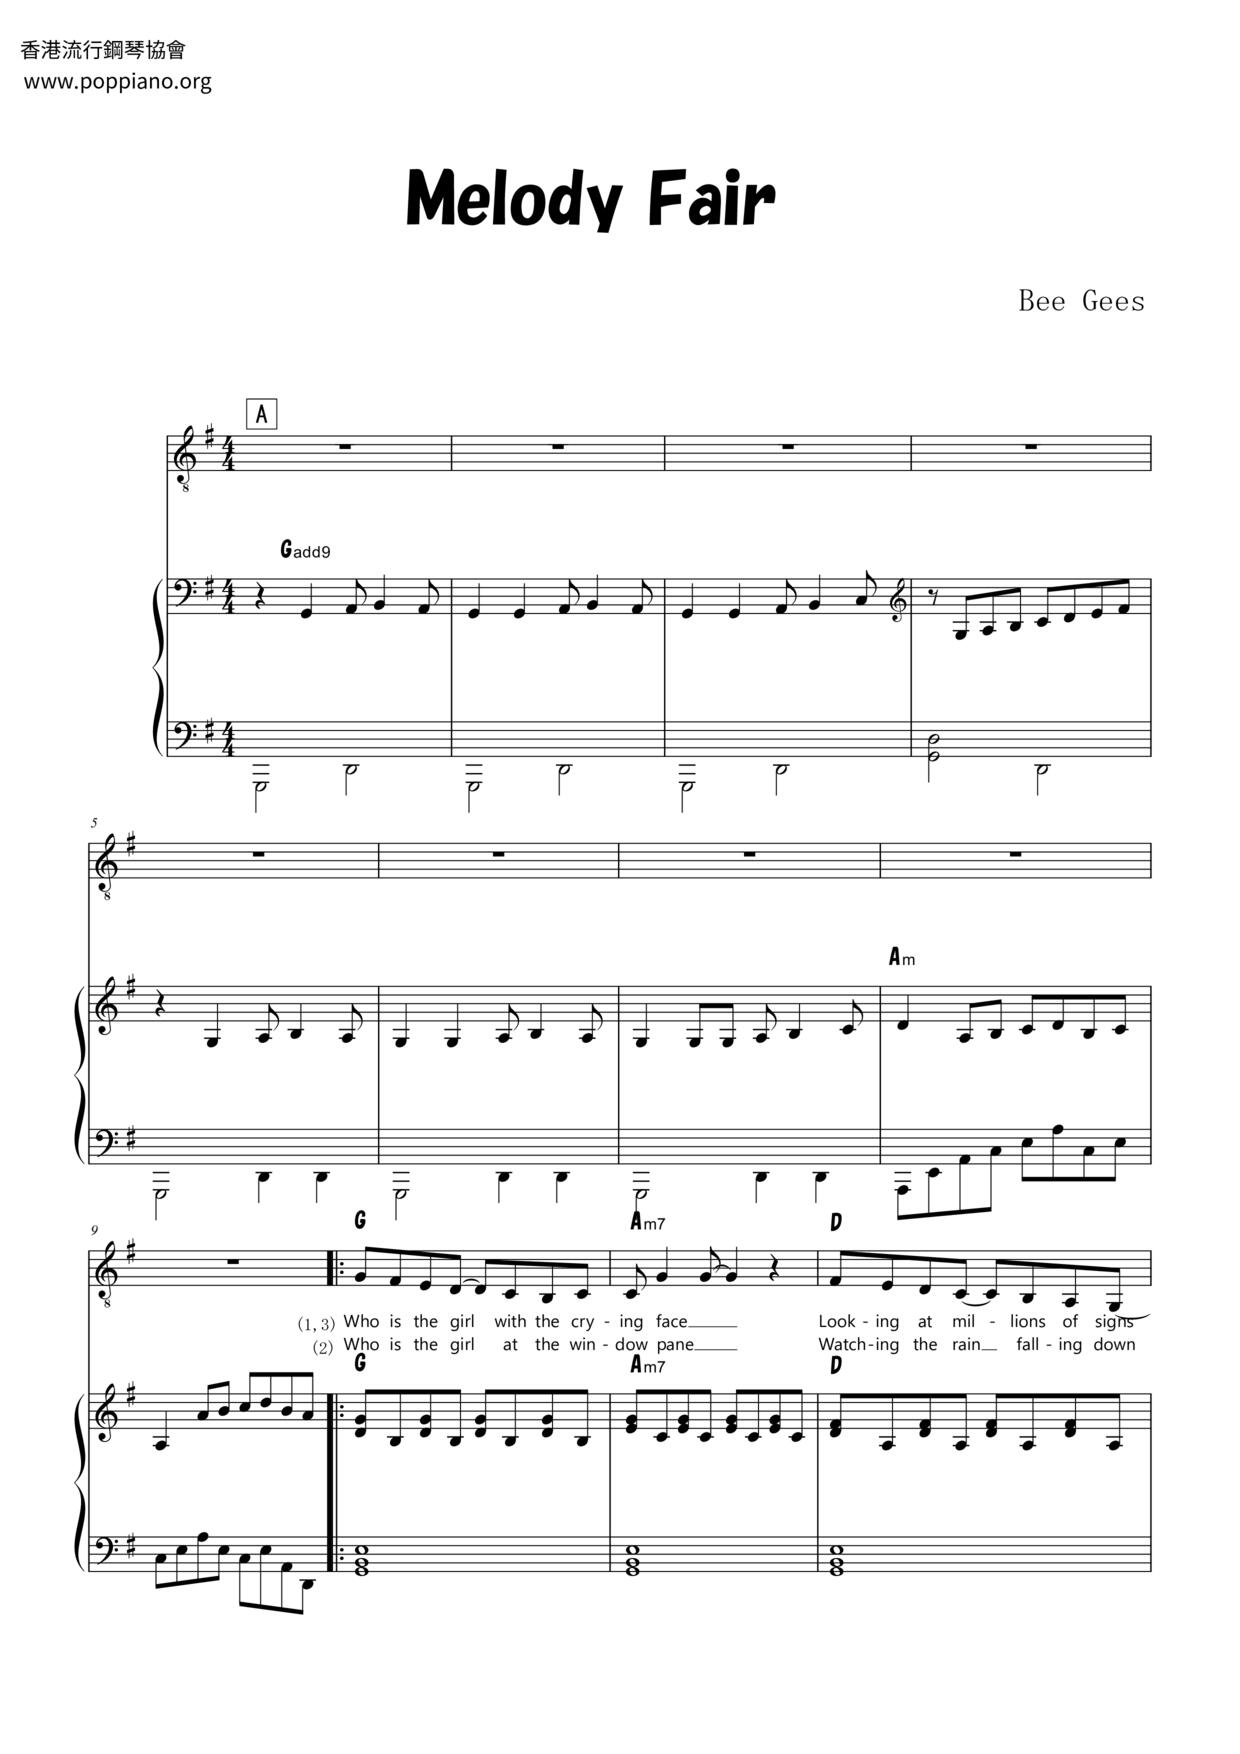 Melody Fair Score